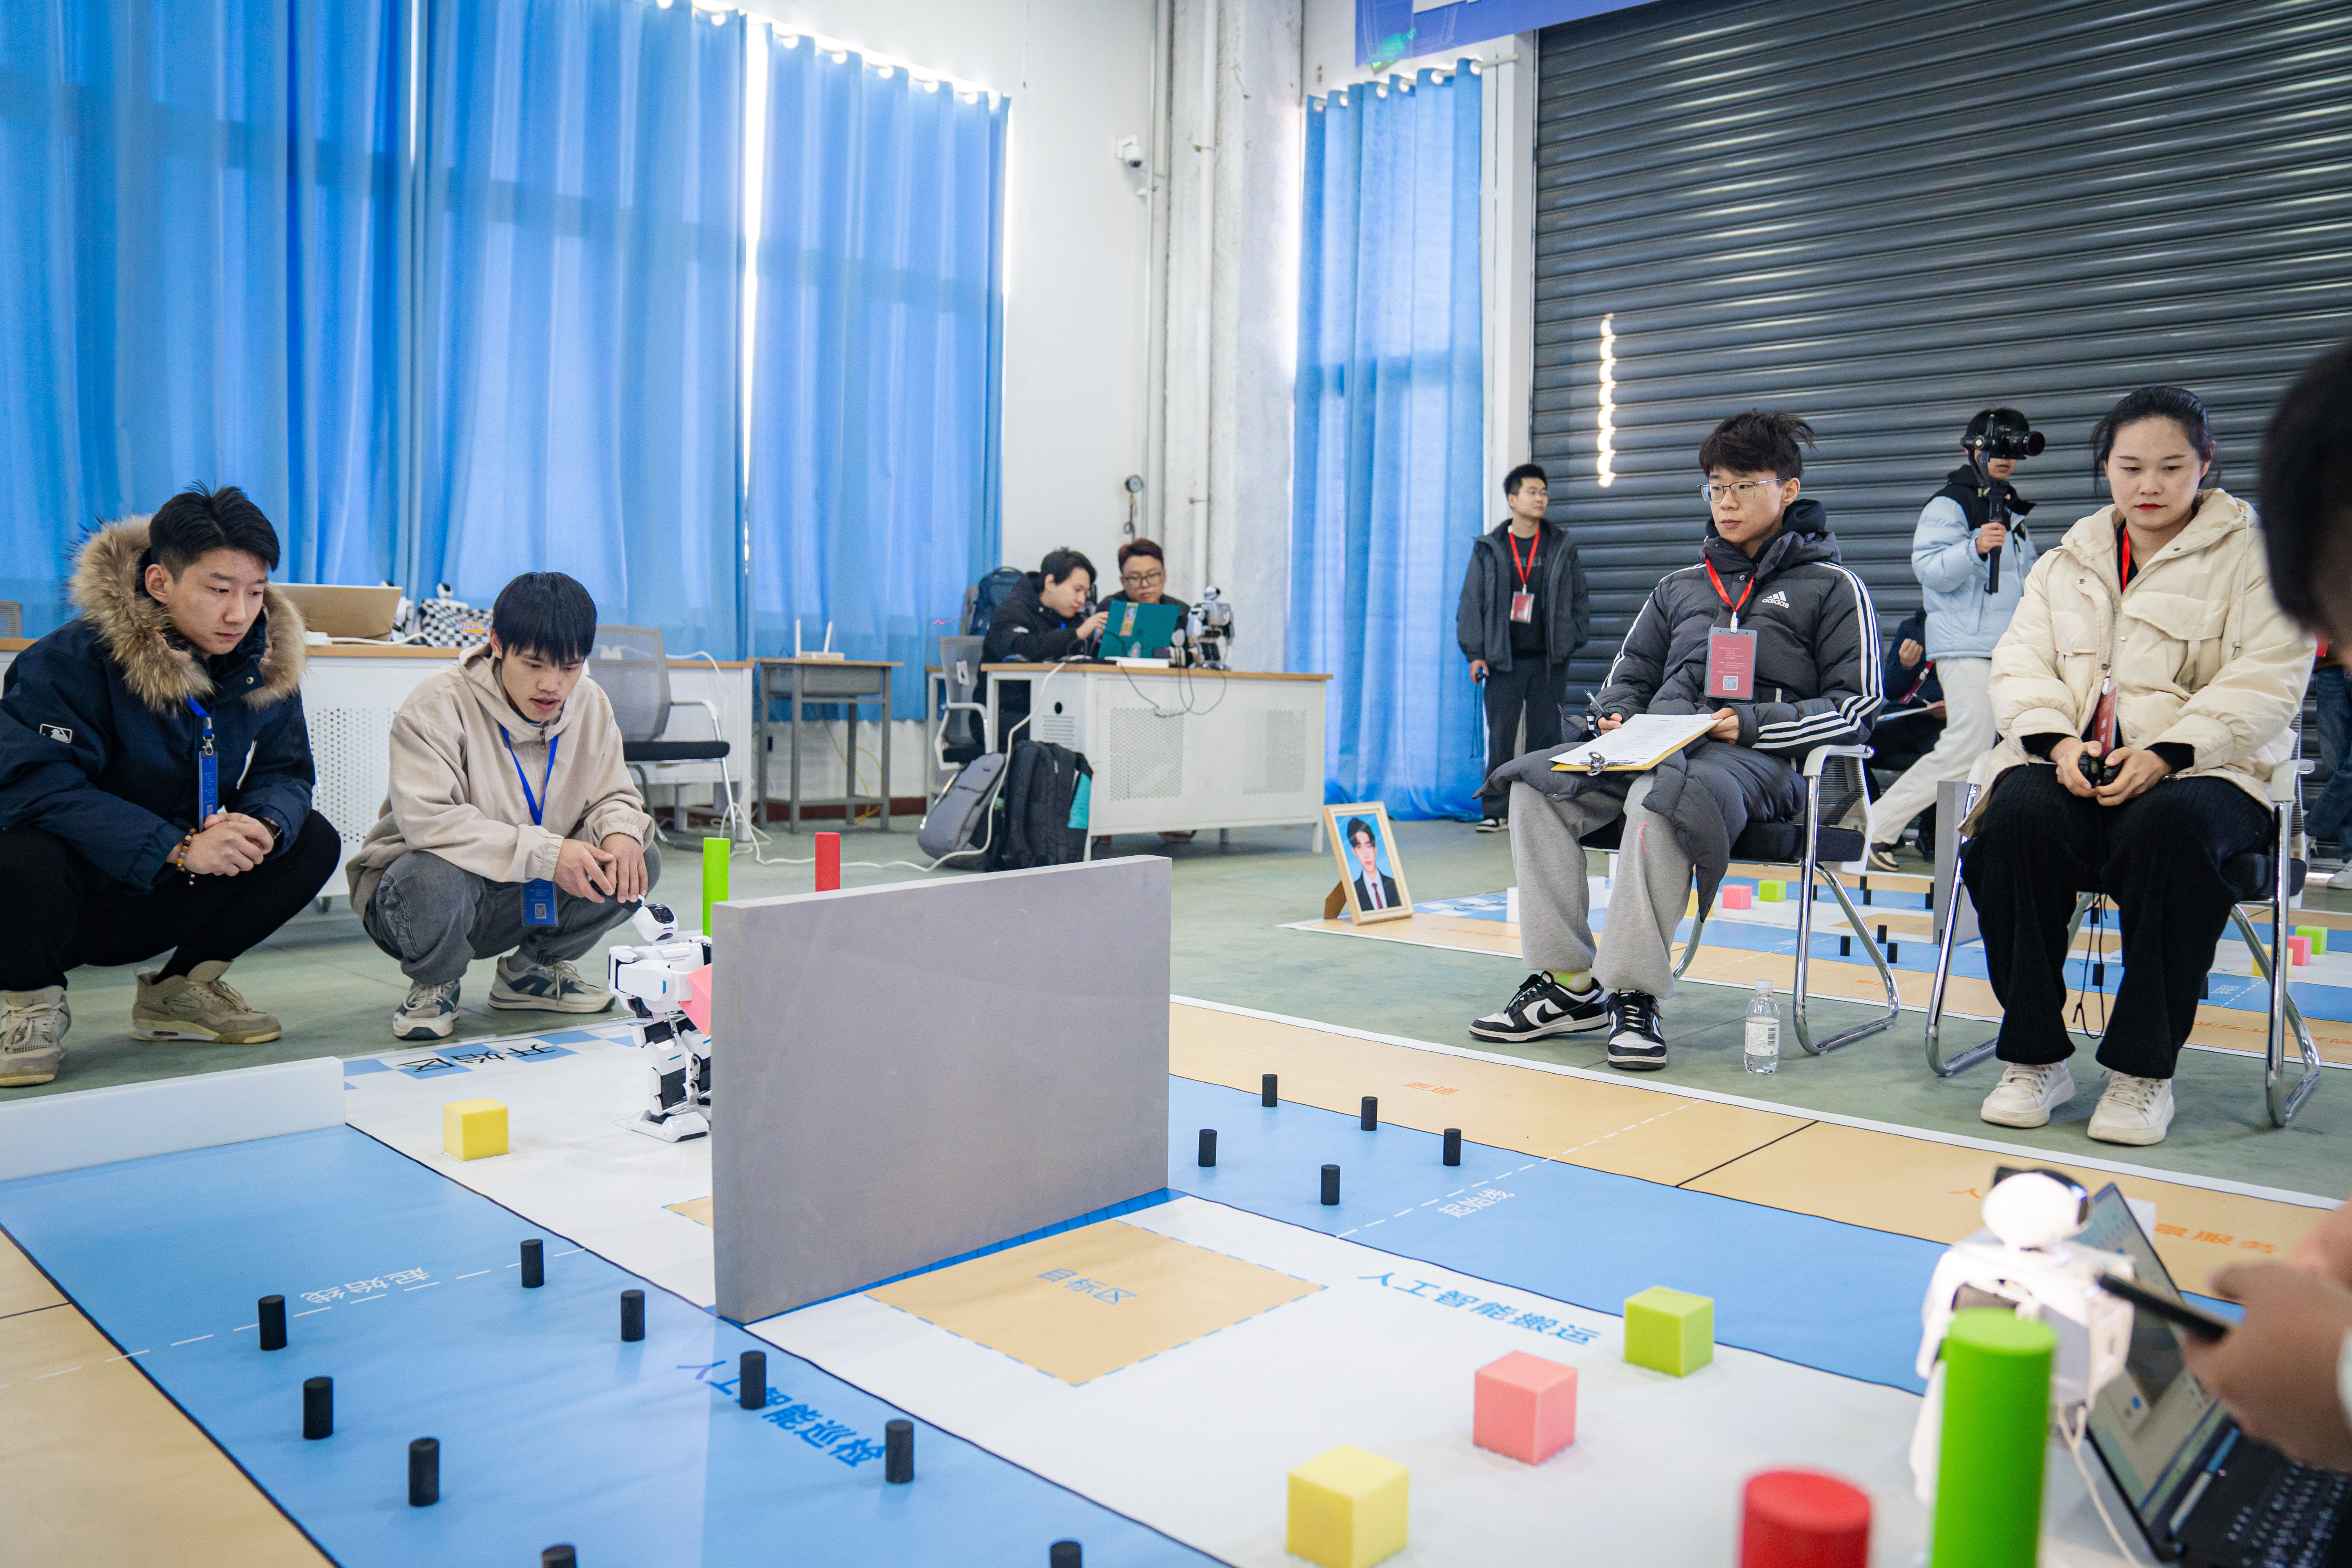 “技能兴鲁”职业技能大赛服务机器人比赛在青岛莱西举行